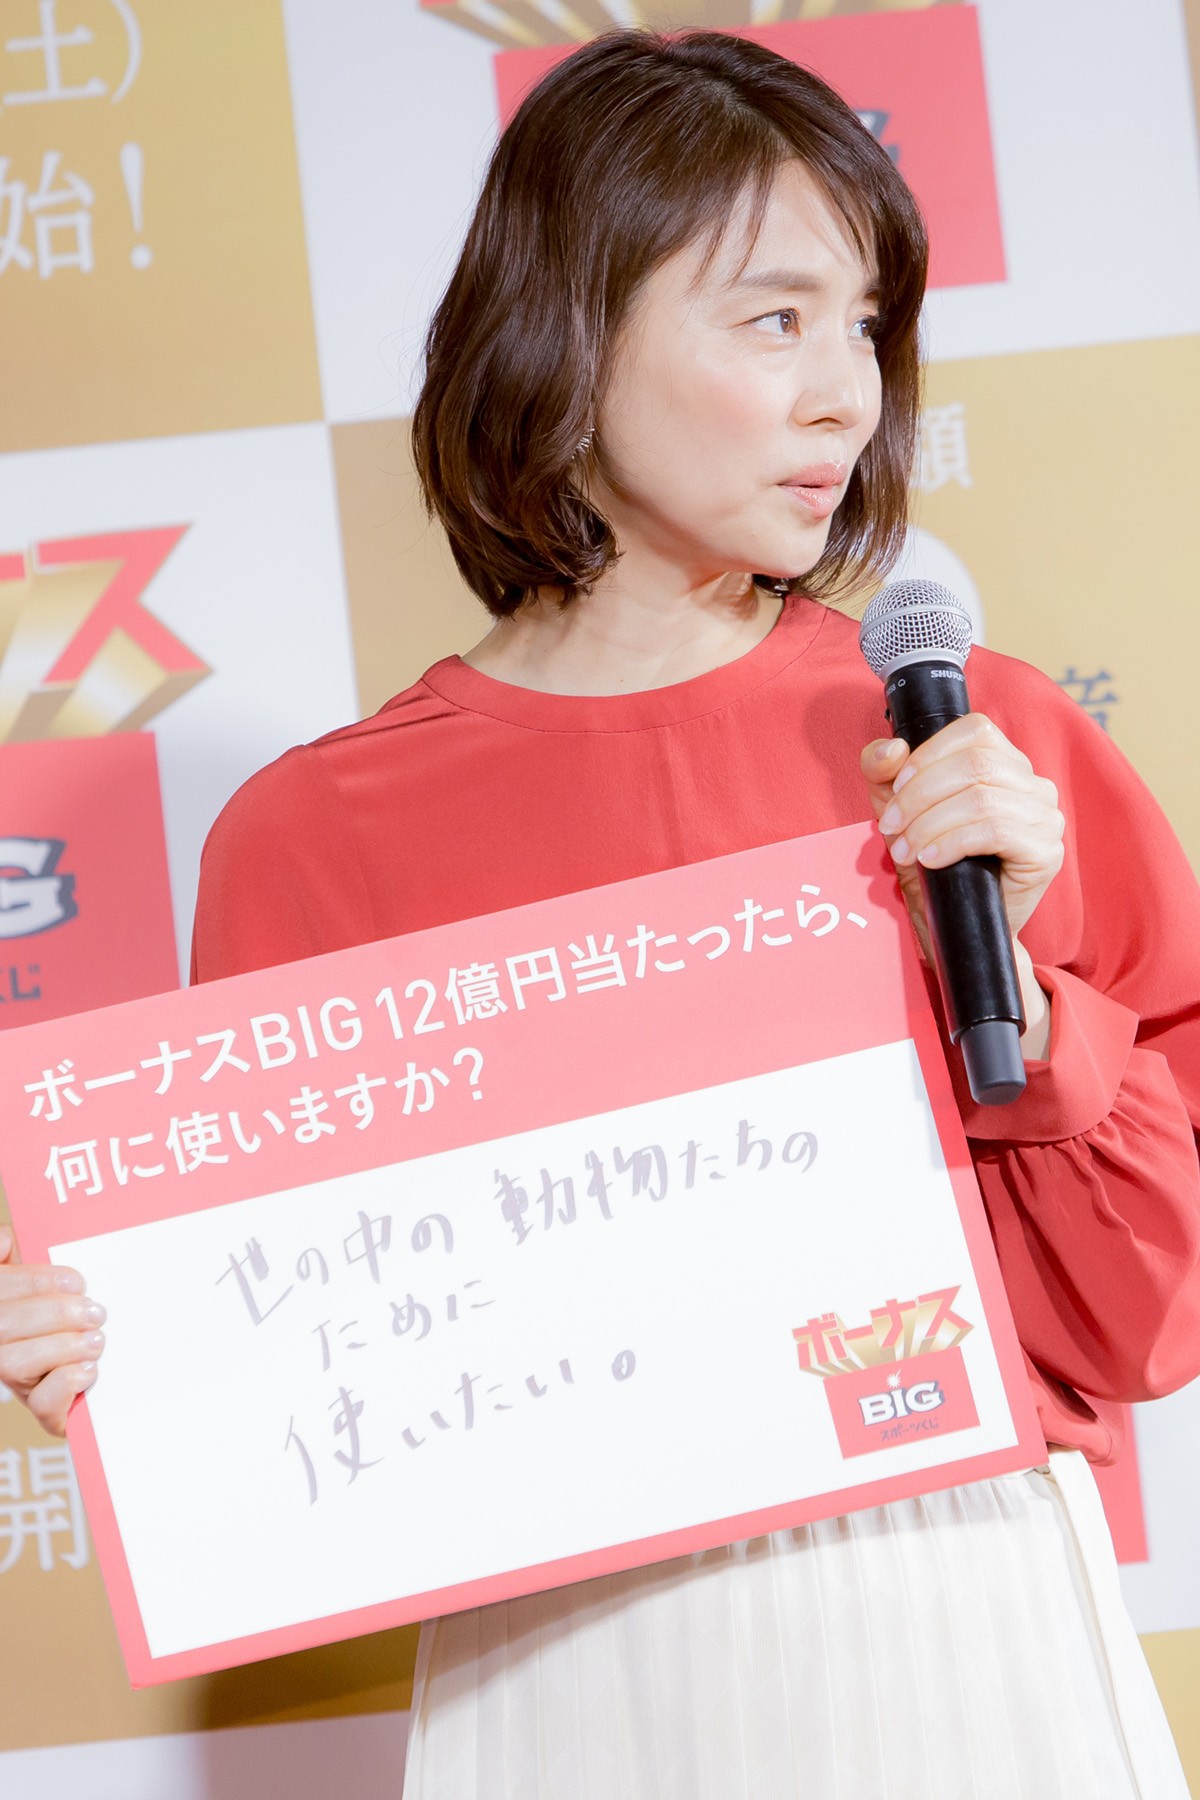 石田ゆり子、12億円が当たったら「動物たちのために使いたい」